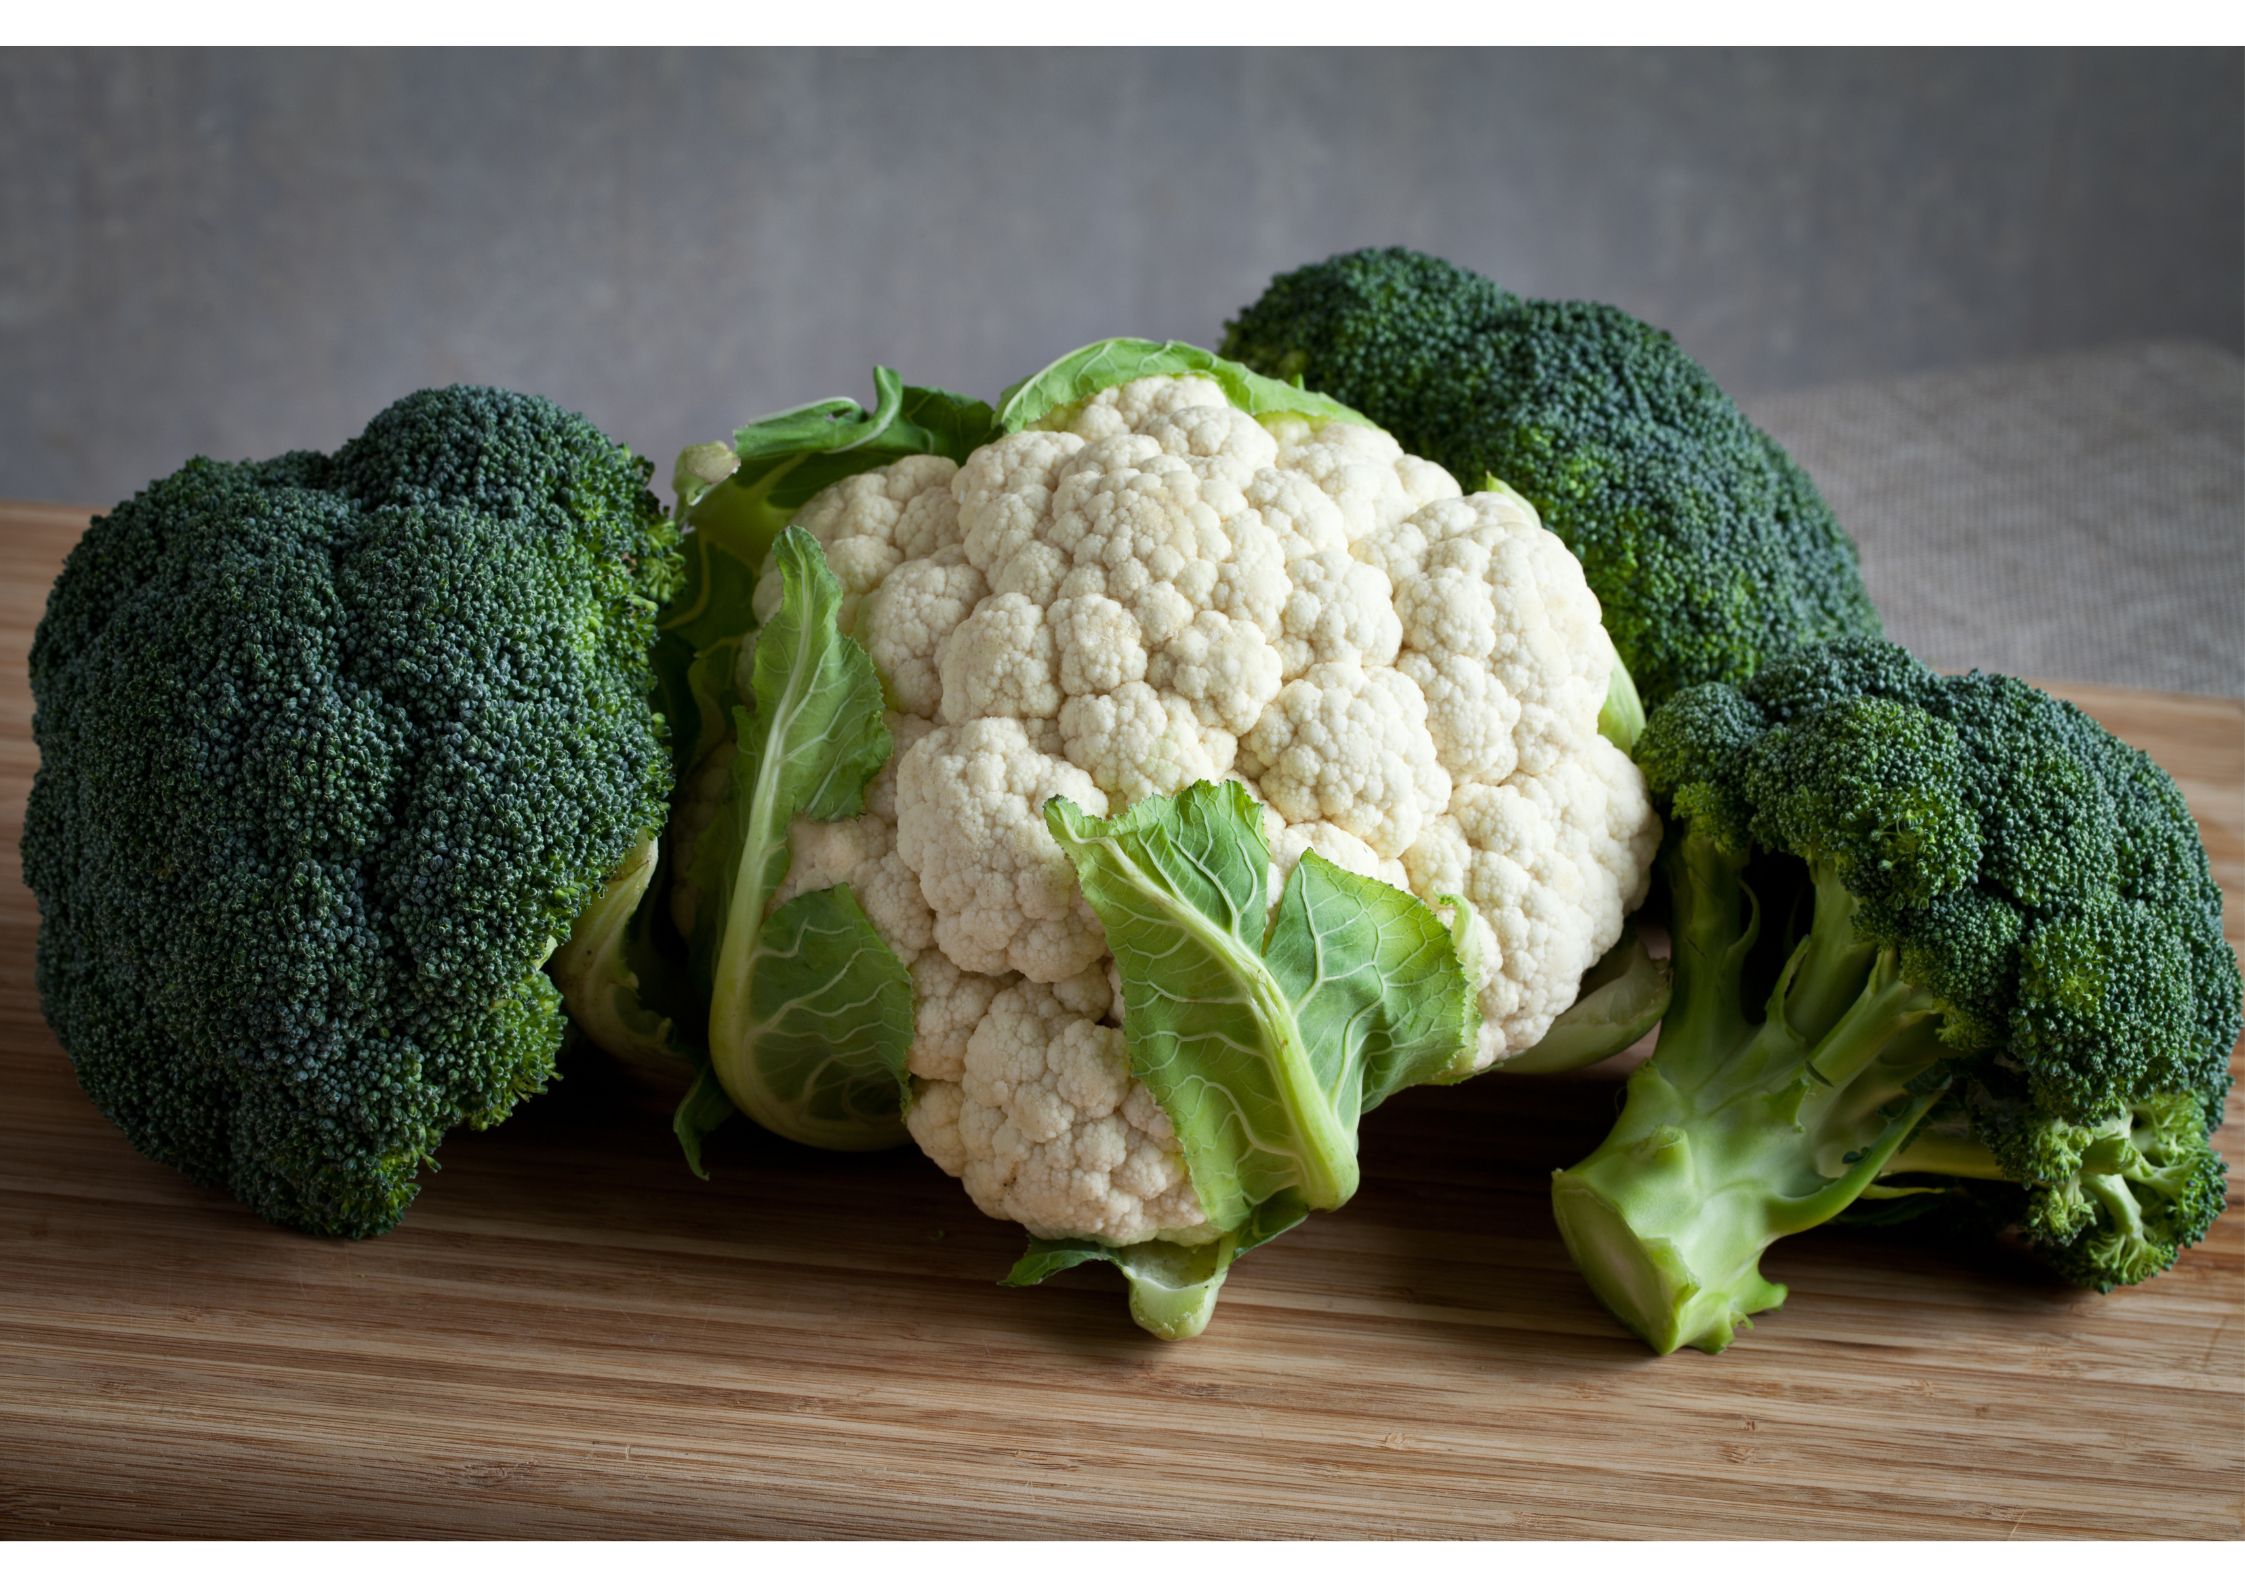 2つのビタミンを同時に採れるブロッコリーは風邪知らずといっていい野菜♪page-visual 2つのビタミンを同時に採れるブロッコリーは風邪知らずといっていい野菜♪ビジュアル